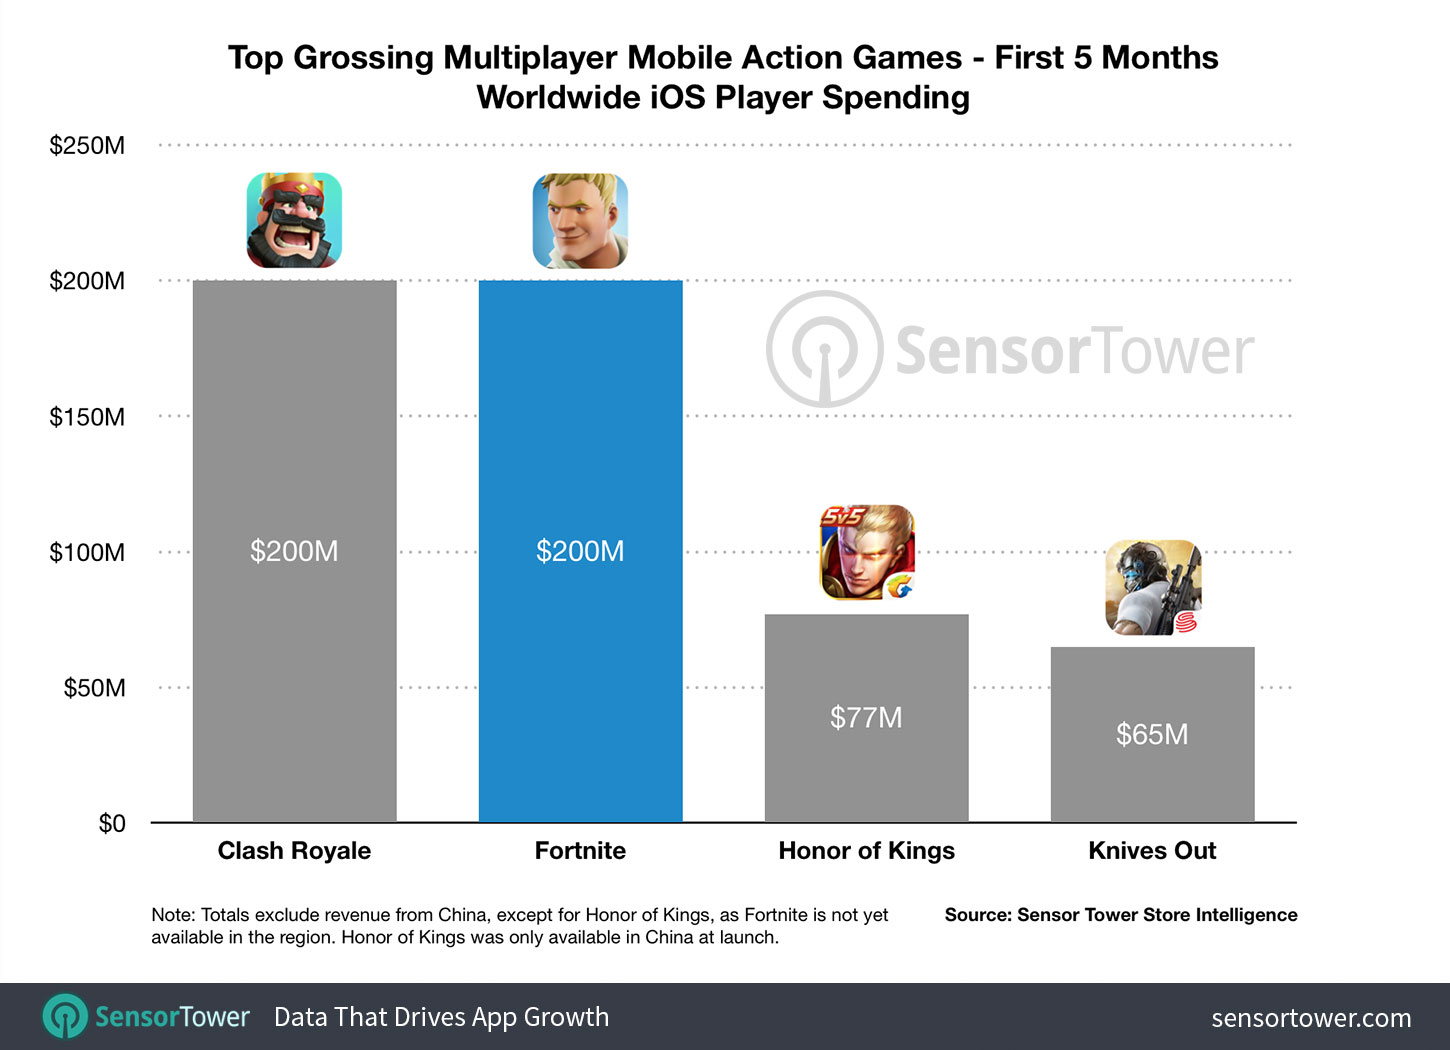 Fortnite supera los 200 millones de dólares de ingresos en iOS